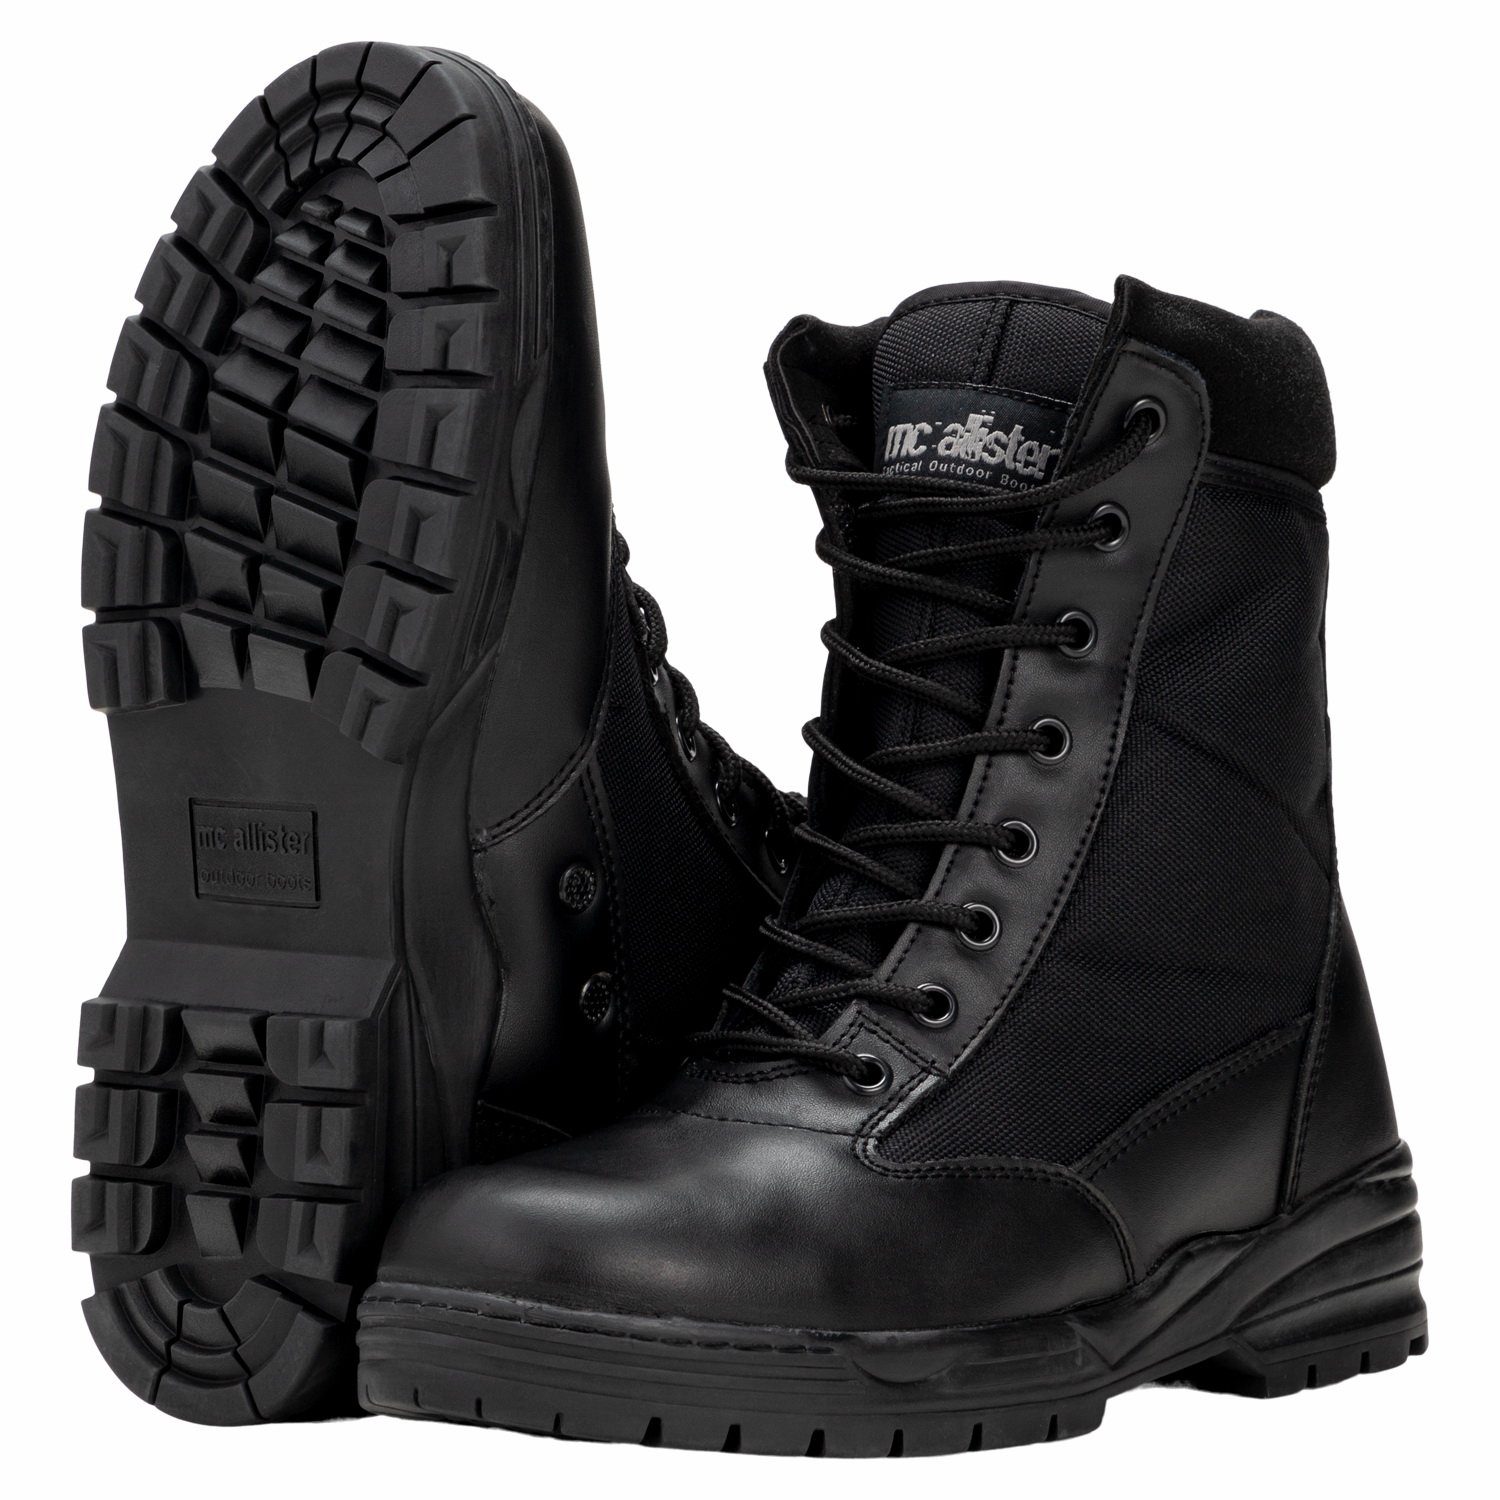 Commando-Industries »Army Patriot Boots Kampfstiefel mit Reißverschluss  Schwarz« Stiefel online kaufen | OTTO